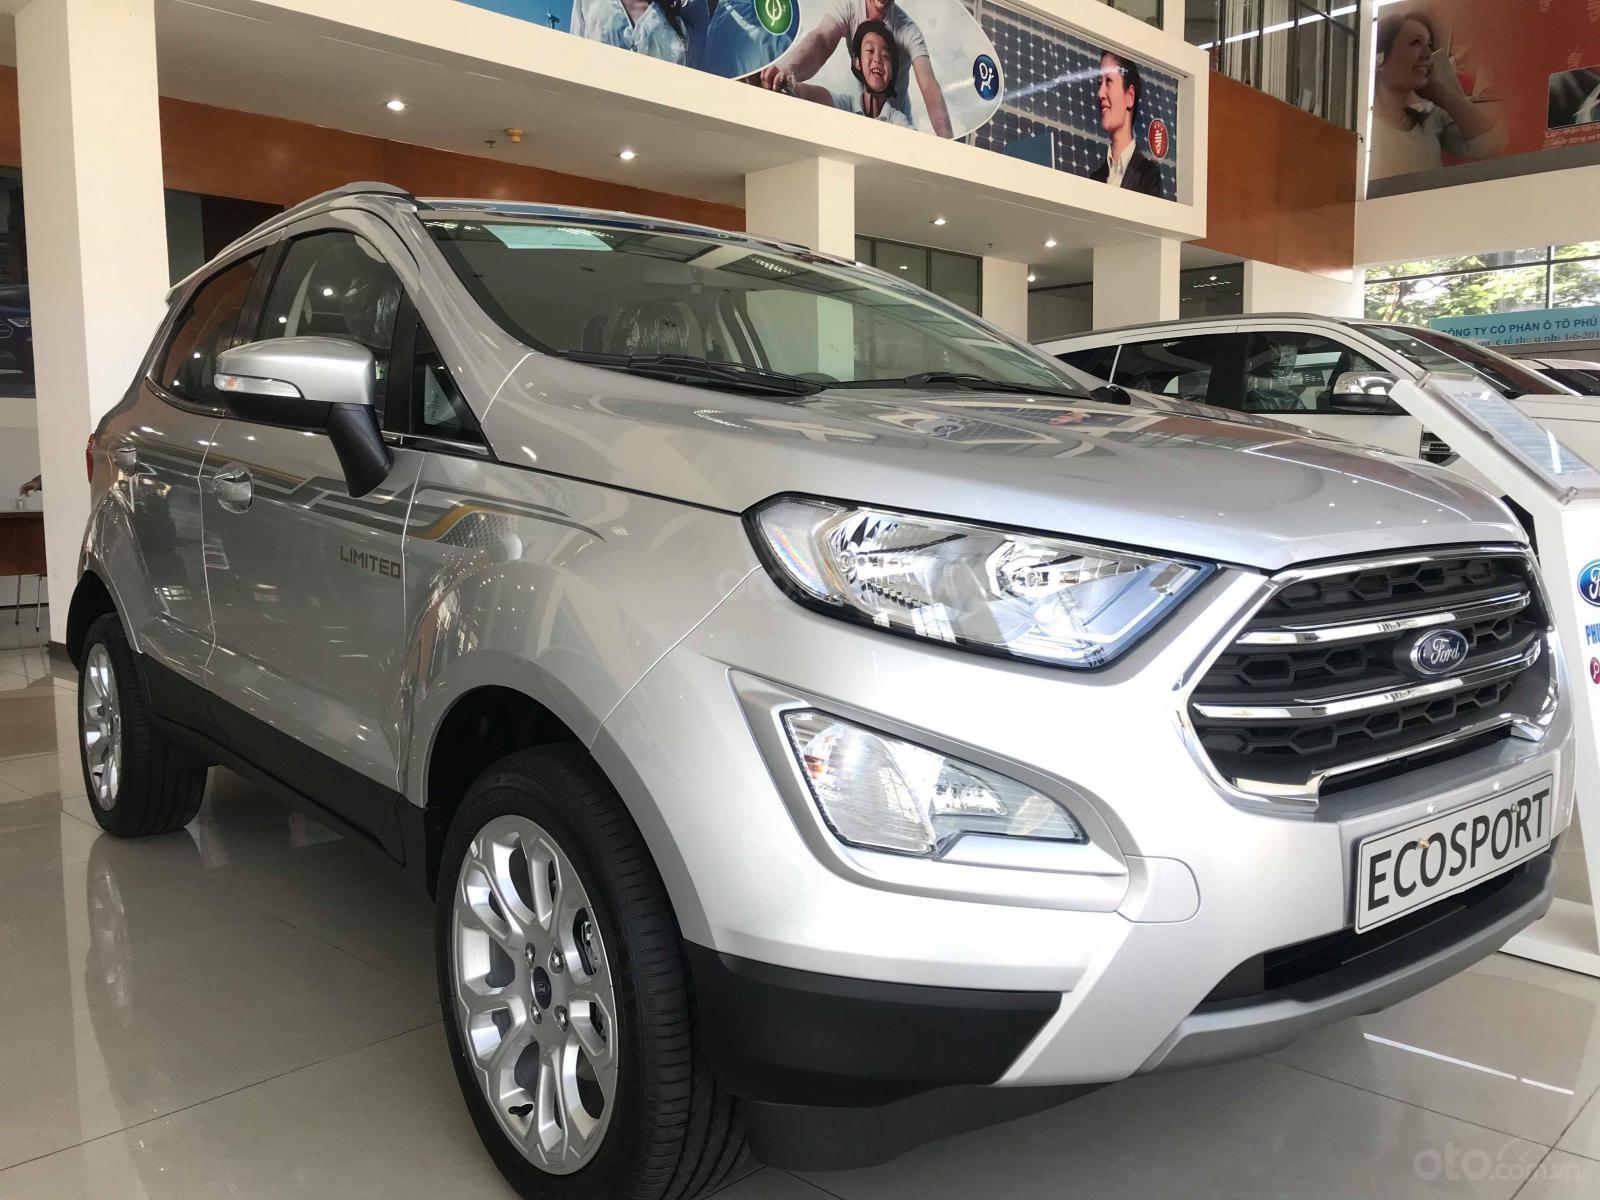 Giá xe Ford EcoSport giảm 10 triệu đồng trong tháng 8/2019 sfd